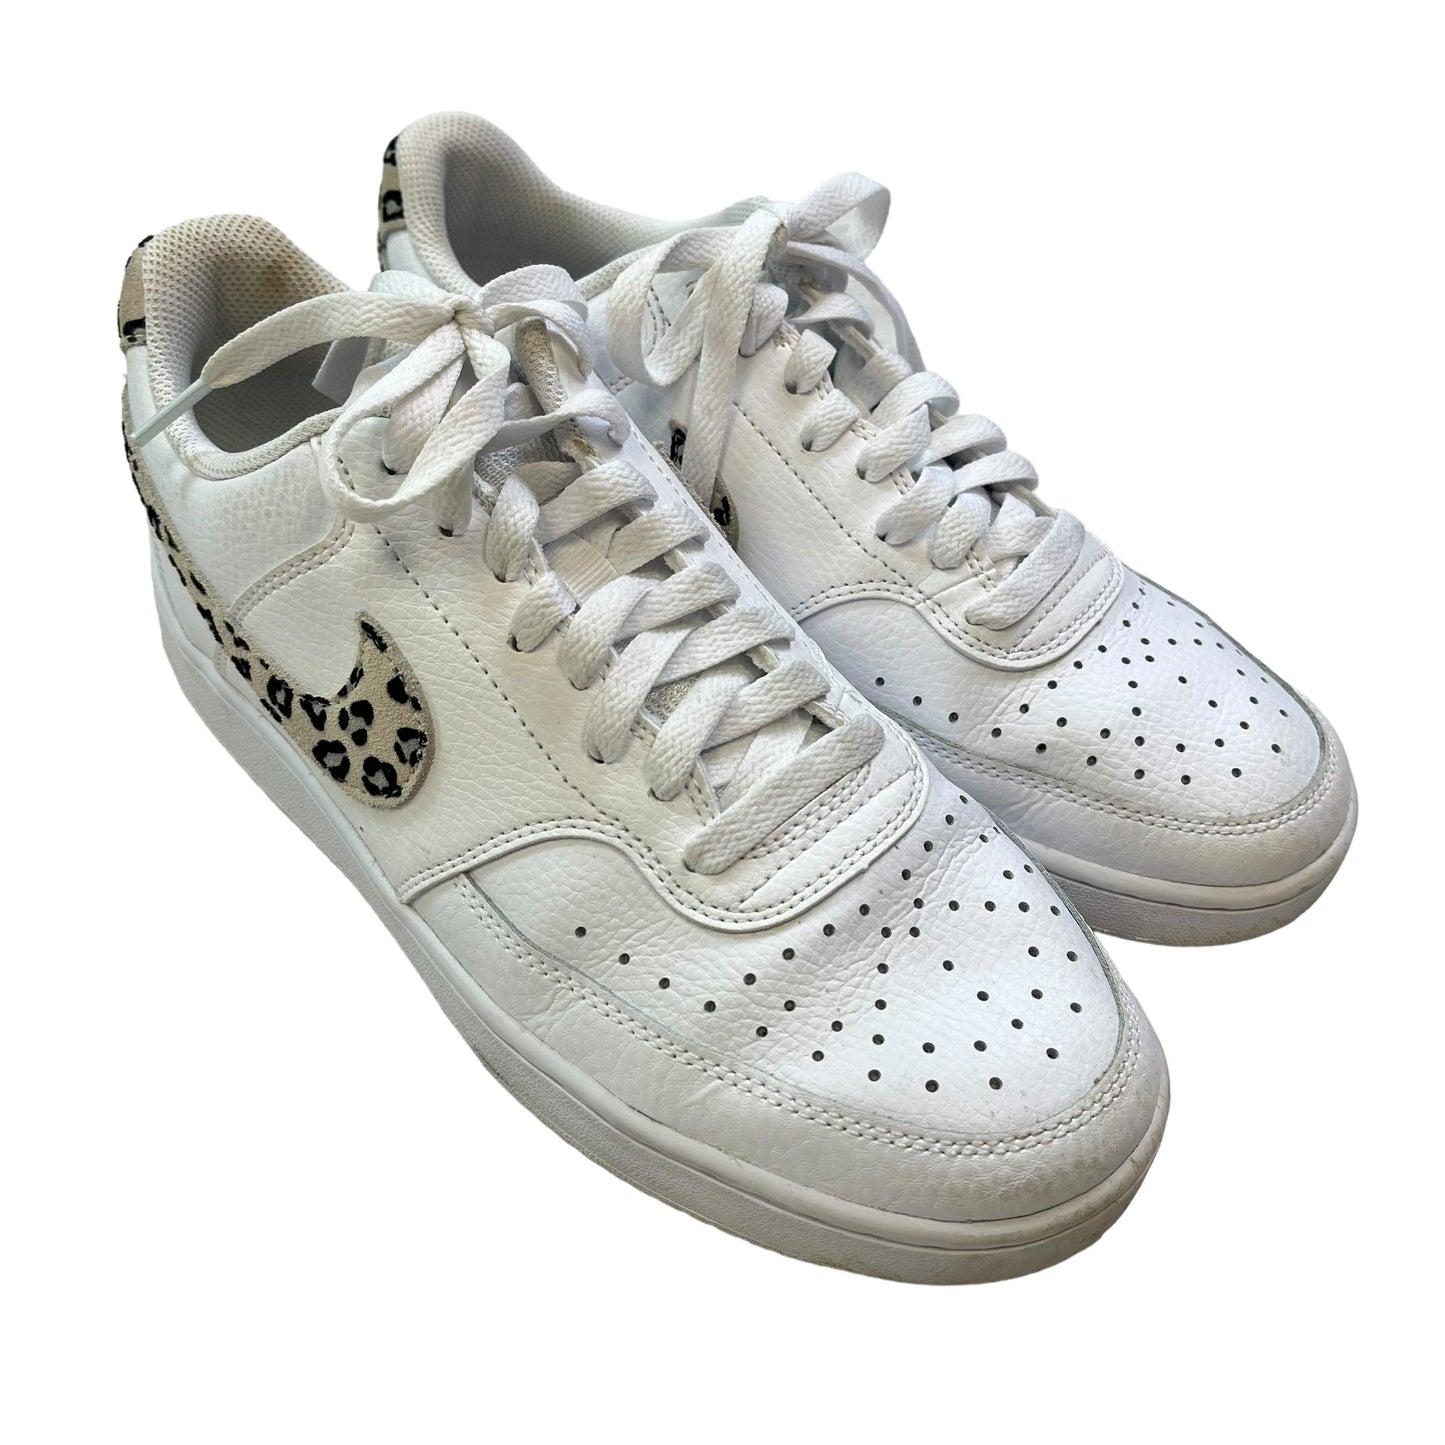 White Shoes Athletic Nike, Size 9.5